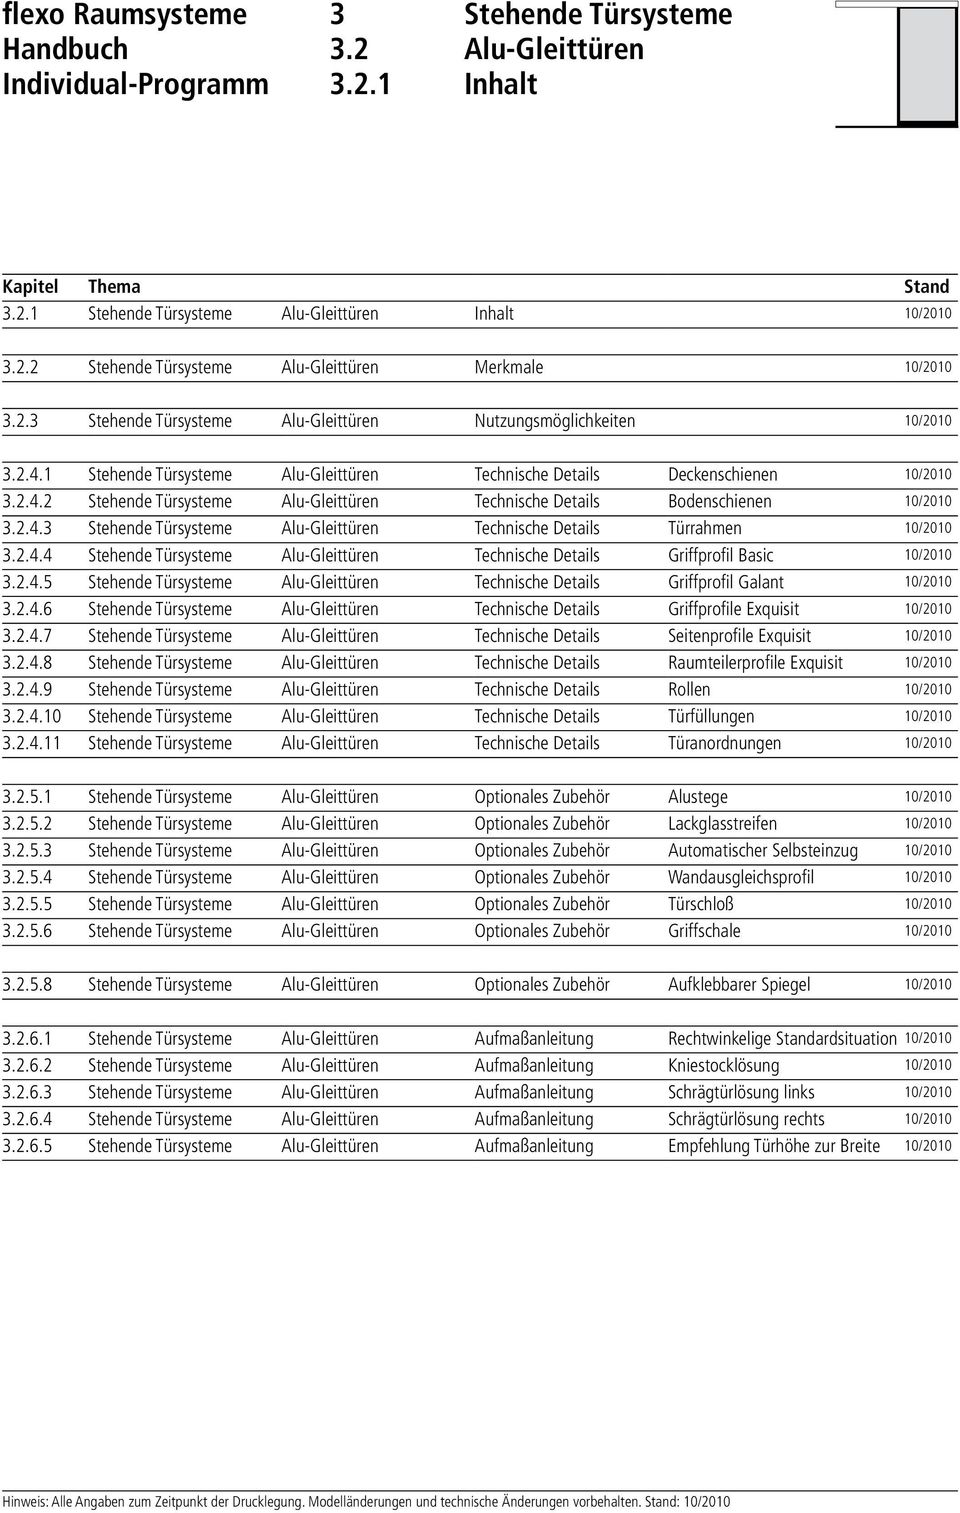 2.4.4 Stehende Türsysteme Alu-Gleittüren Technische Details Griffprofil Basic 10/2010 3.2.4.5 Stehende Türsysteme Alu-Gleittüren Technische Details Griffprofil Galant 10/2010 3.2.4.6 Stehende Türsysteme Alu-Gleittüren Technische Details Griffprofile Exquisit 10/2010 3.